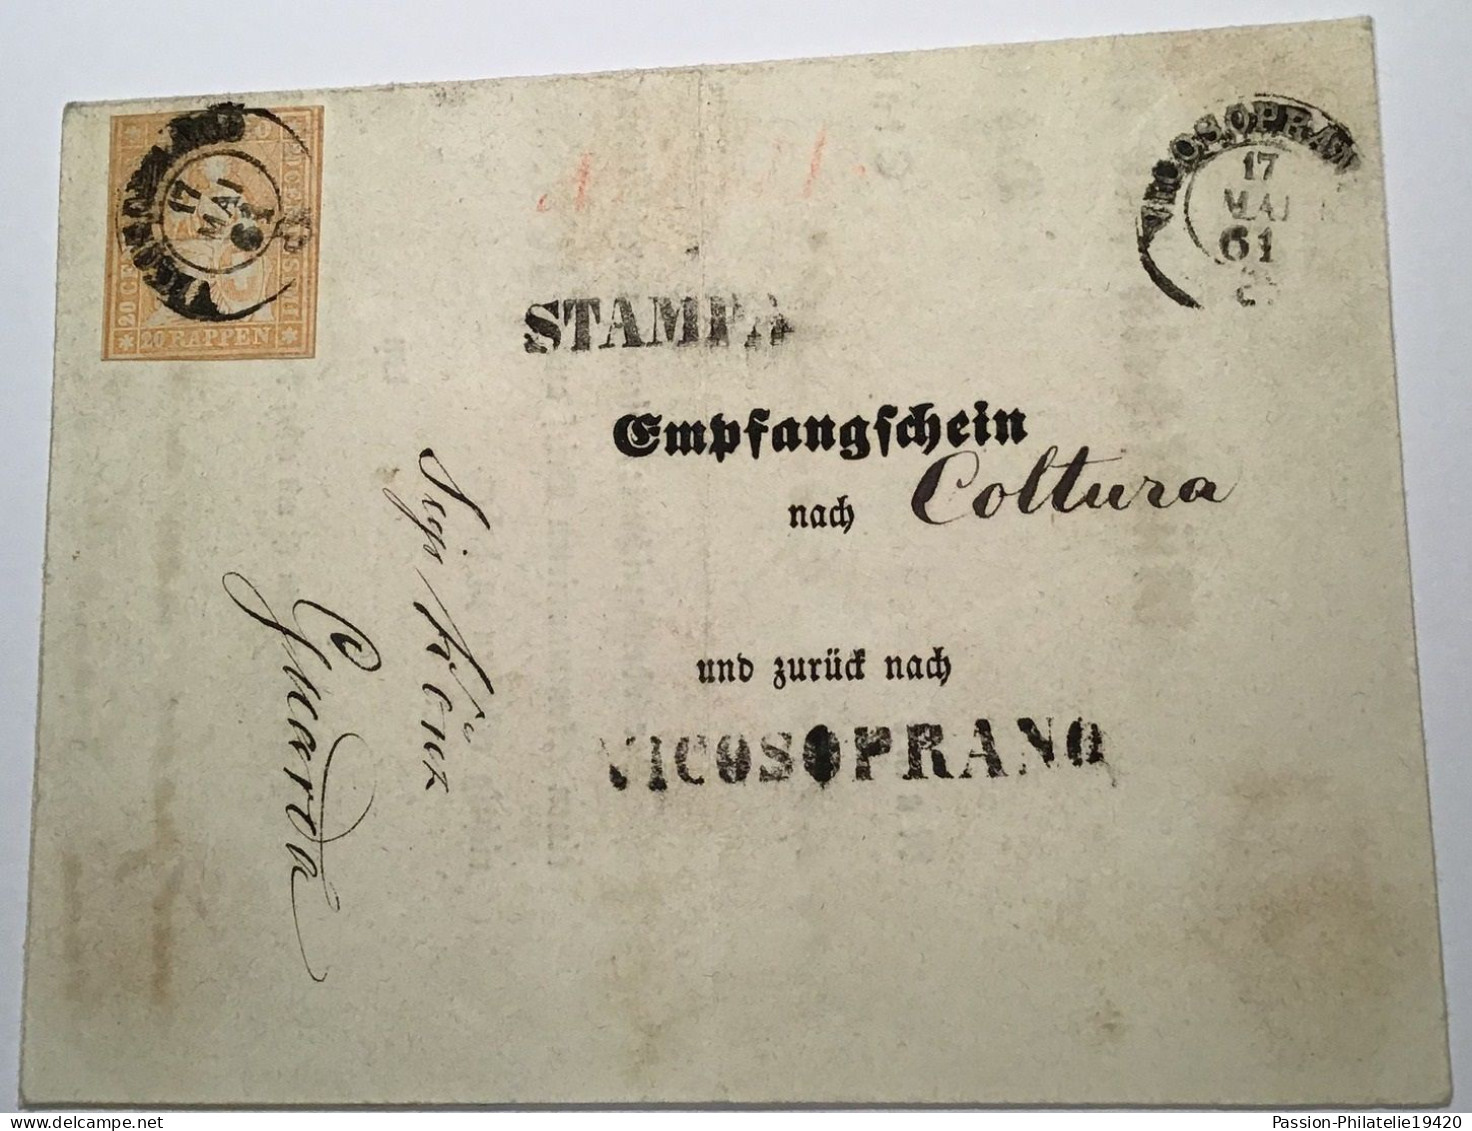 Schweiz ZNr 25D EXTREM SELTENER RÜCKSCHEIN FÜR R-BRIEFE Von Vicosoprano 1861(Graubünden Brief Strubel Attest Hermann - Storia Postale